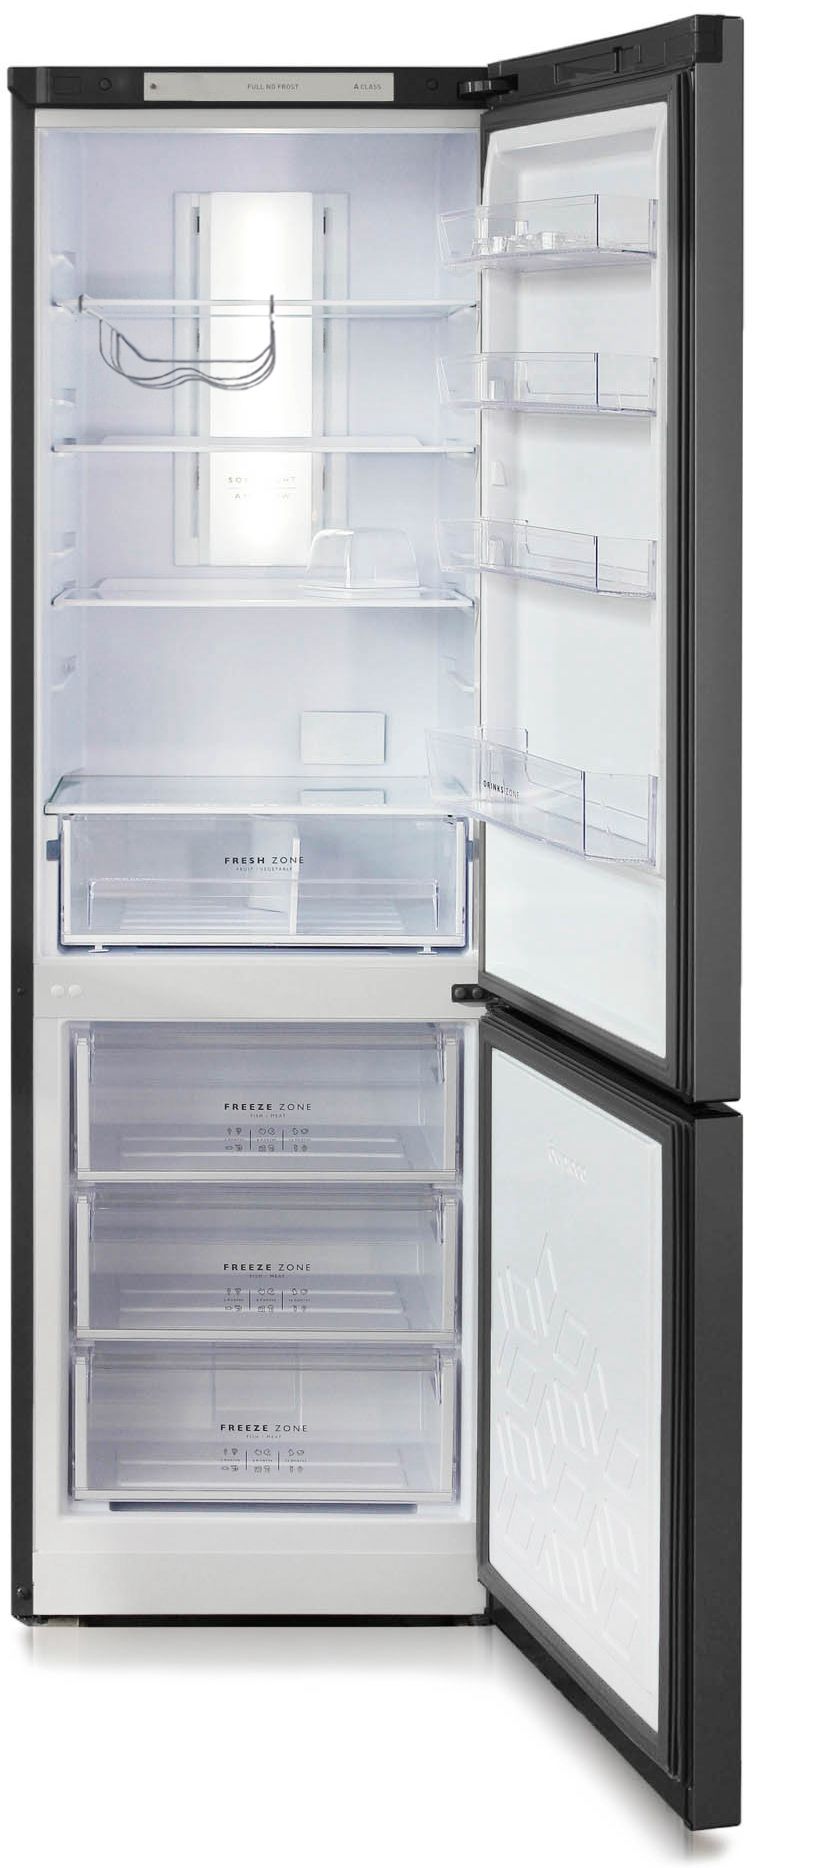 холодильник бирюса 960nf, купить в Красноярске холодильник бирюса 960nf,  купить в Красноярске дешево холодильник бирюса 960nf, купить в Красноярске минимальной цене холодильник бирюса 960nf